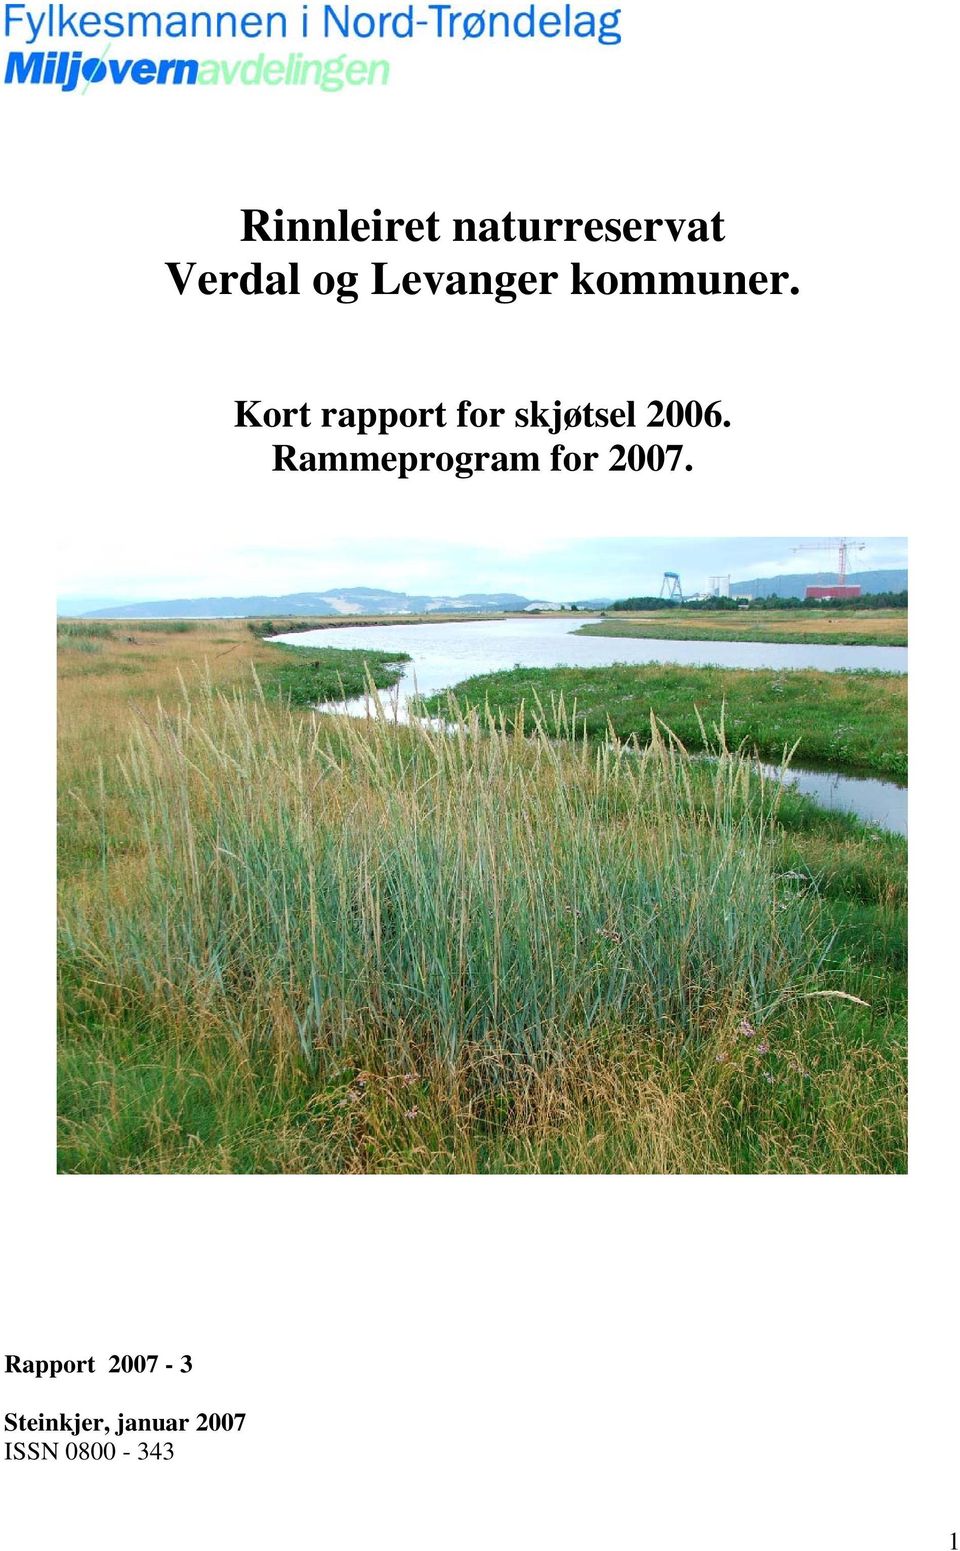 Kort rapport for skjøtsel 2006.